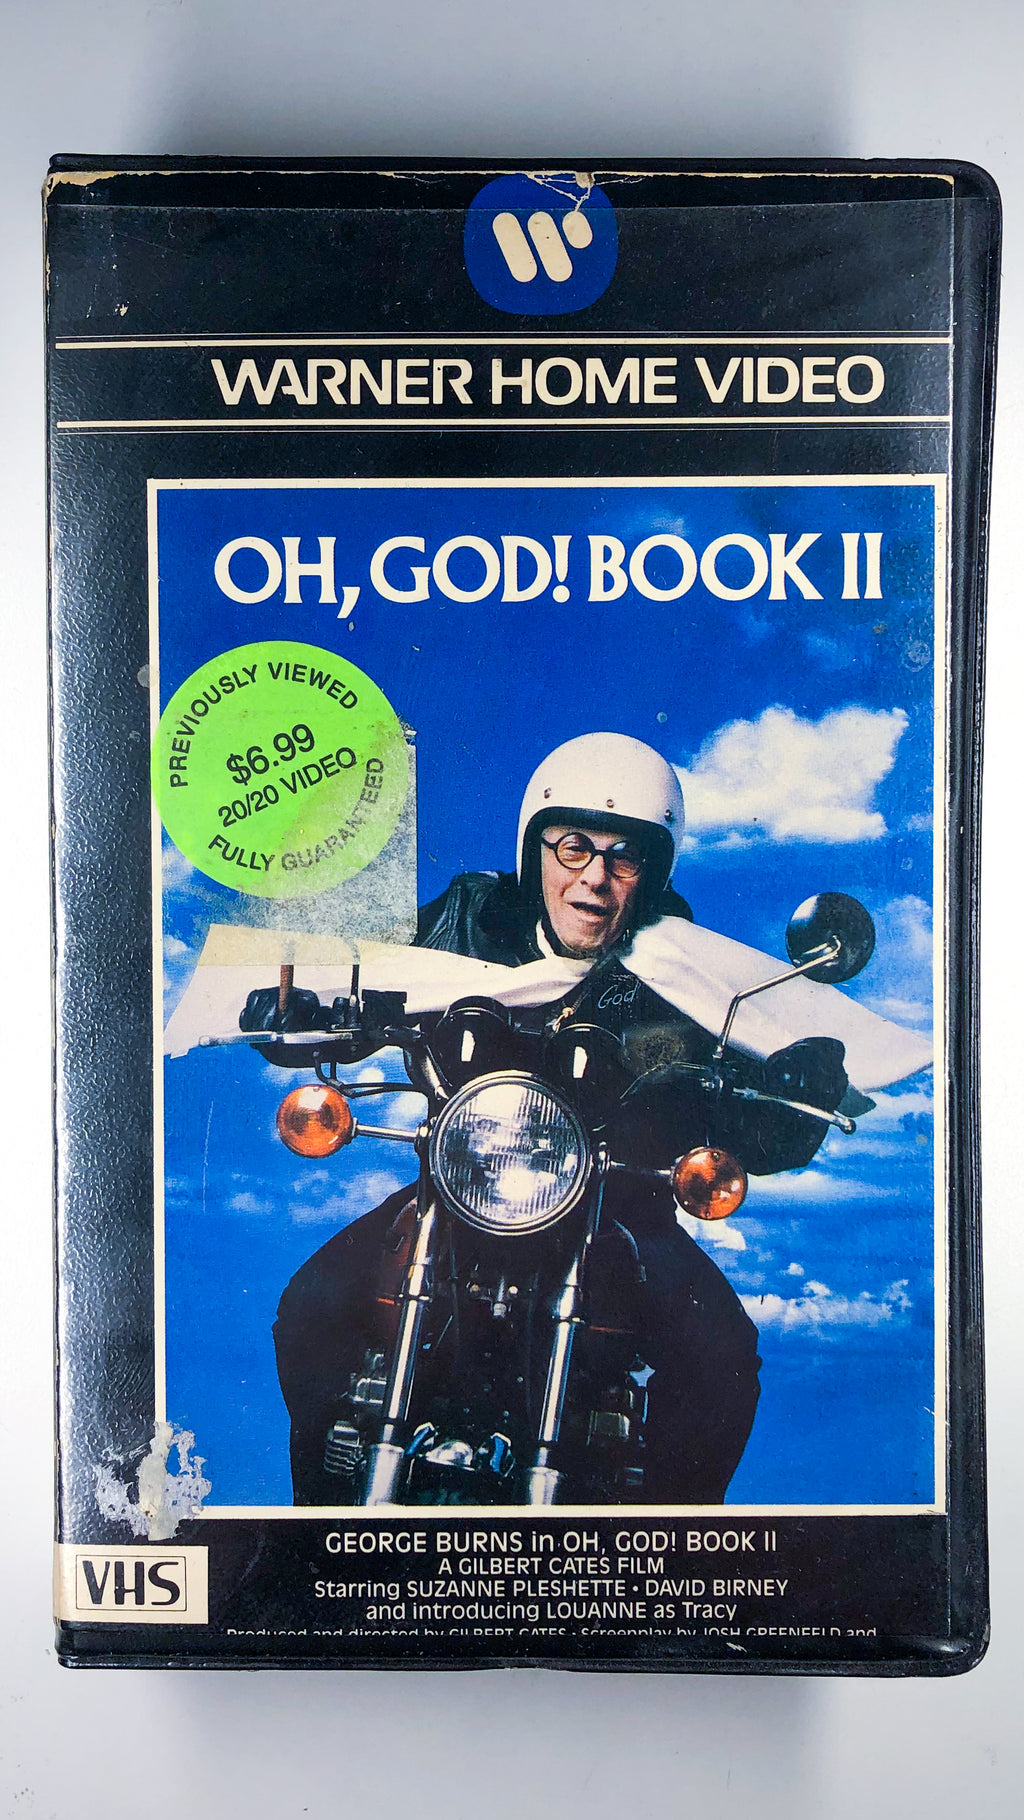 "Oh, God!" Book II